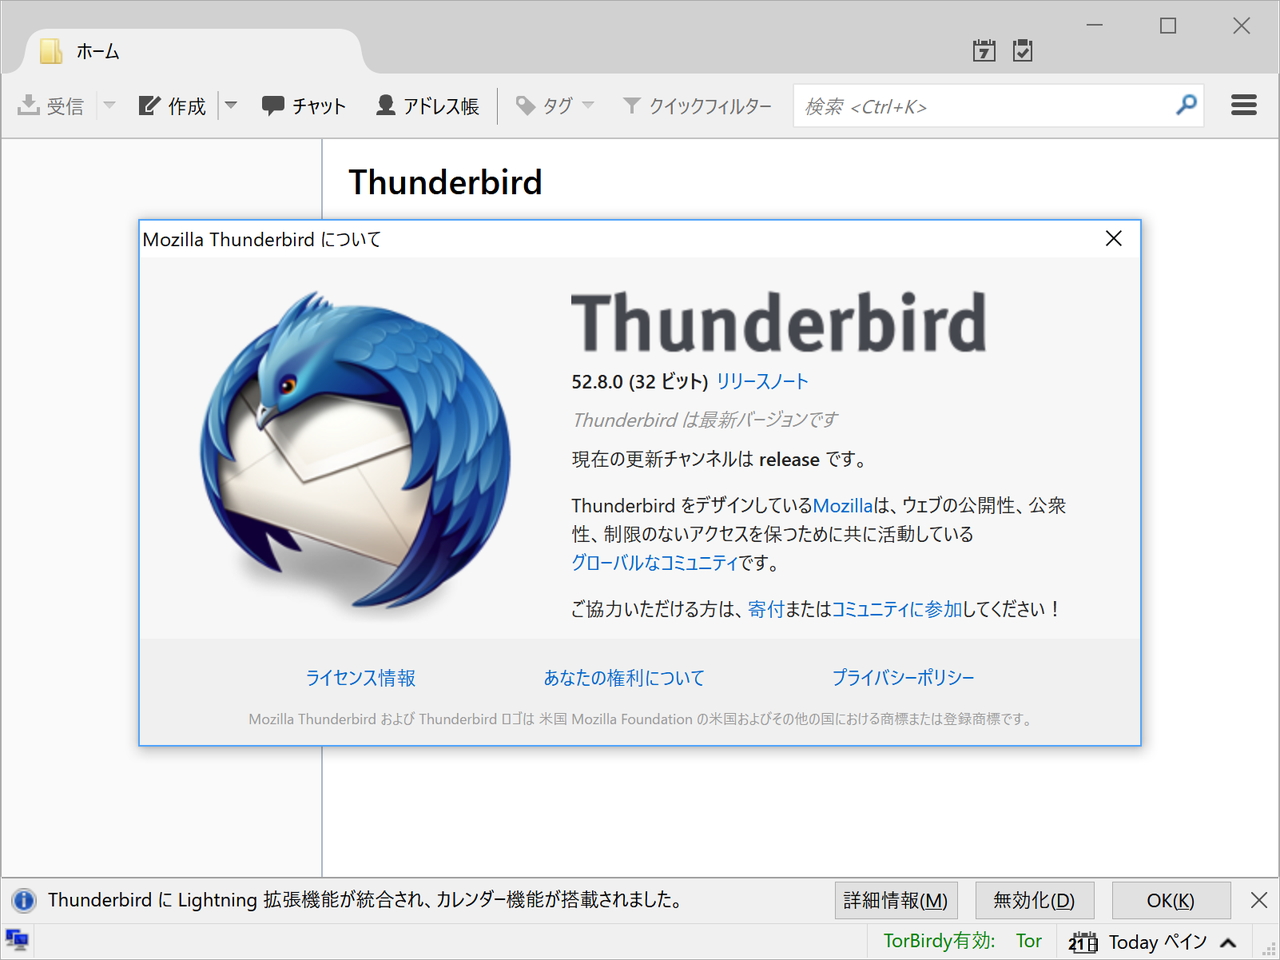 Thunderbird перевод. Mozilla Thunderbird. Mozilla Thunderbird темы. Mozilla Foundation. Mozilla Thunderbird and Lightning.